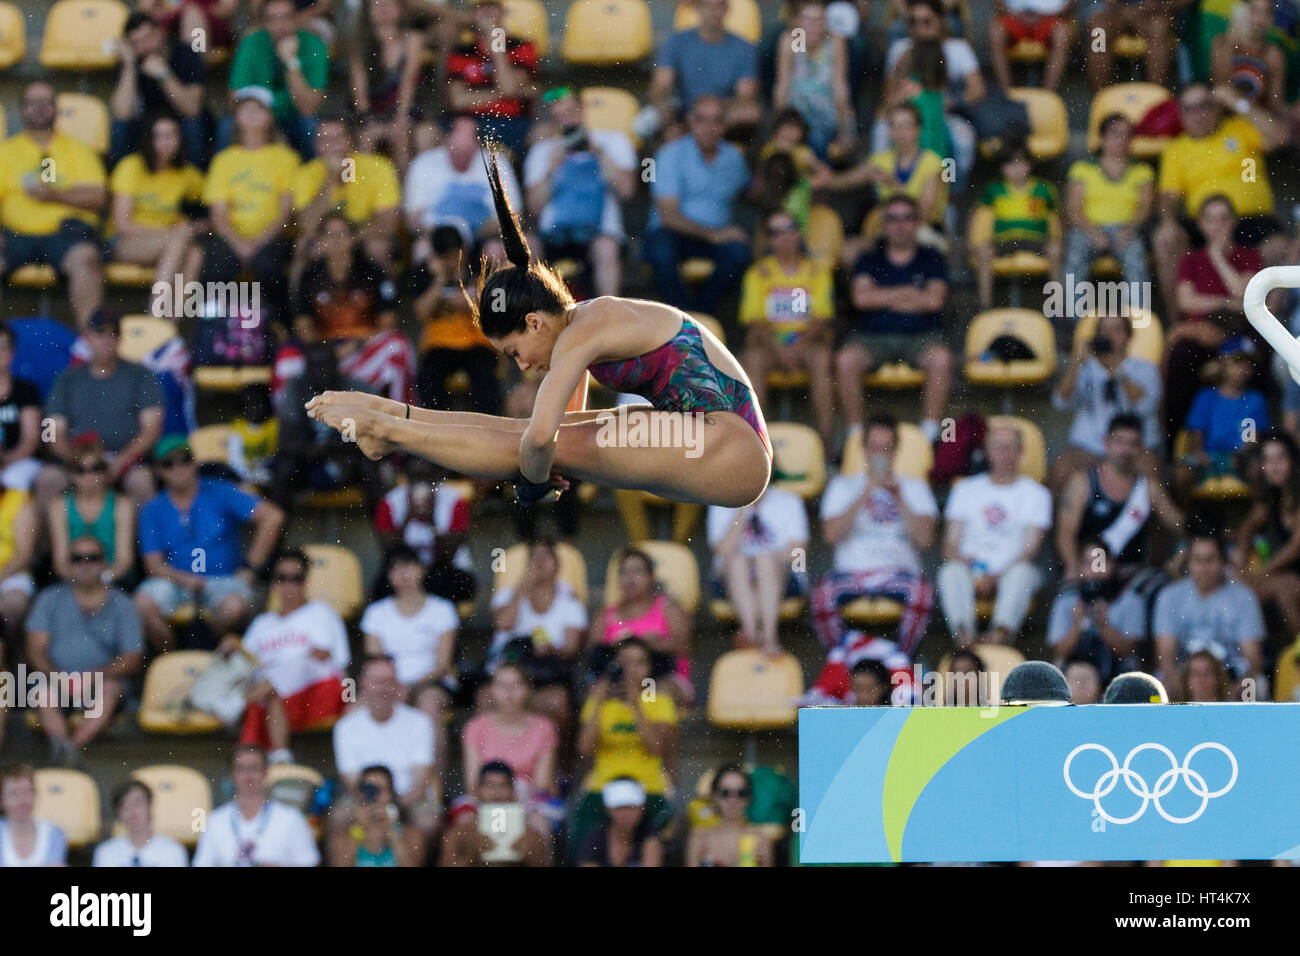 Rio de Janeiro, Brésil. 18 août 2016 Ingrid Oliveira (BRA) participe à la plate-forme de plongée femme 10m préliminaire à l'été 2016 Jeux Olympiques. © Banque D'Images